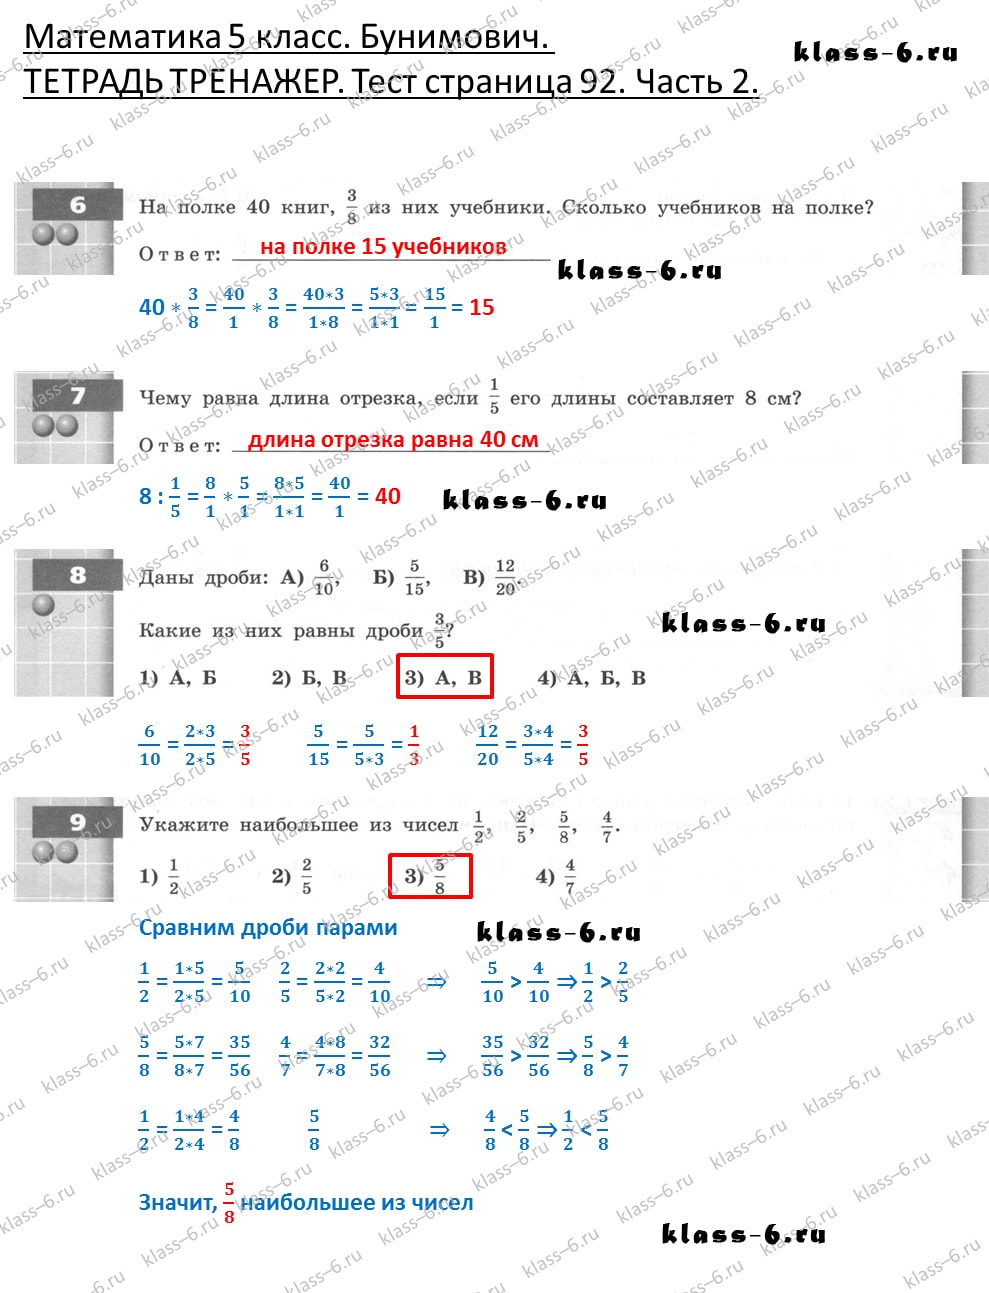 решебник и гдз по математике тетрадь тренажер Бунимович 5 класс тесты страница 92 (2)